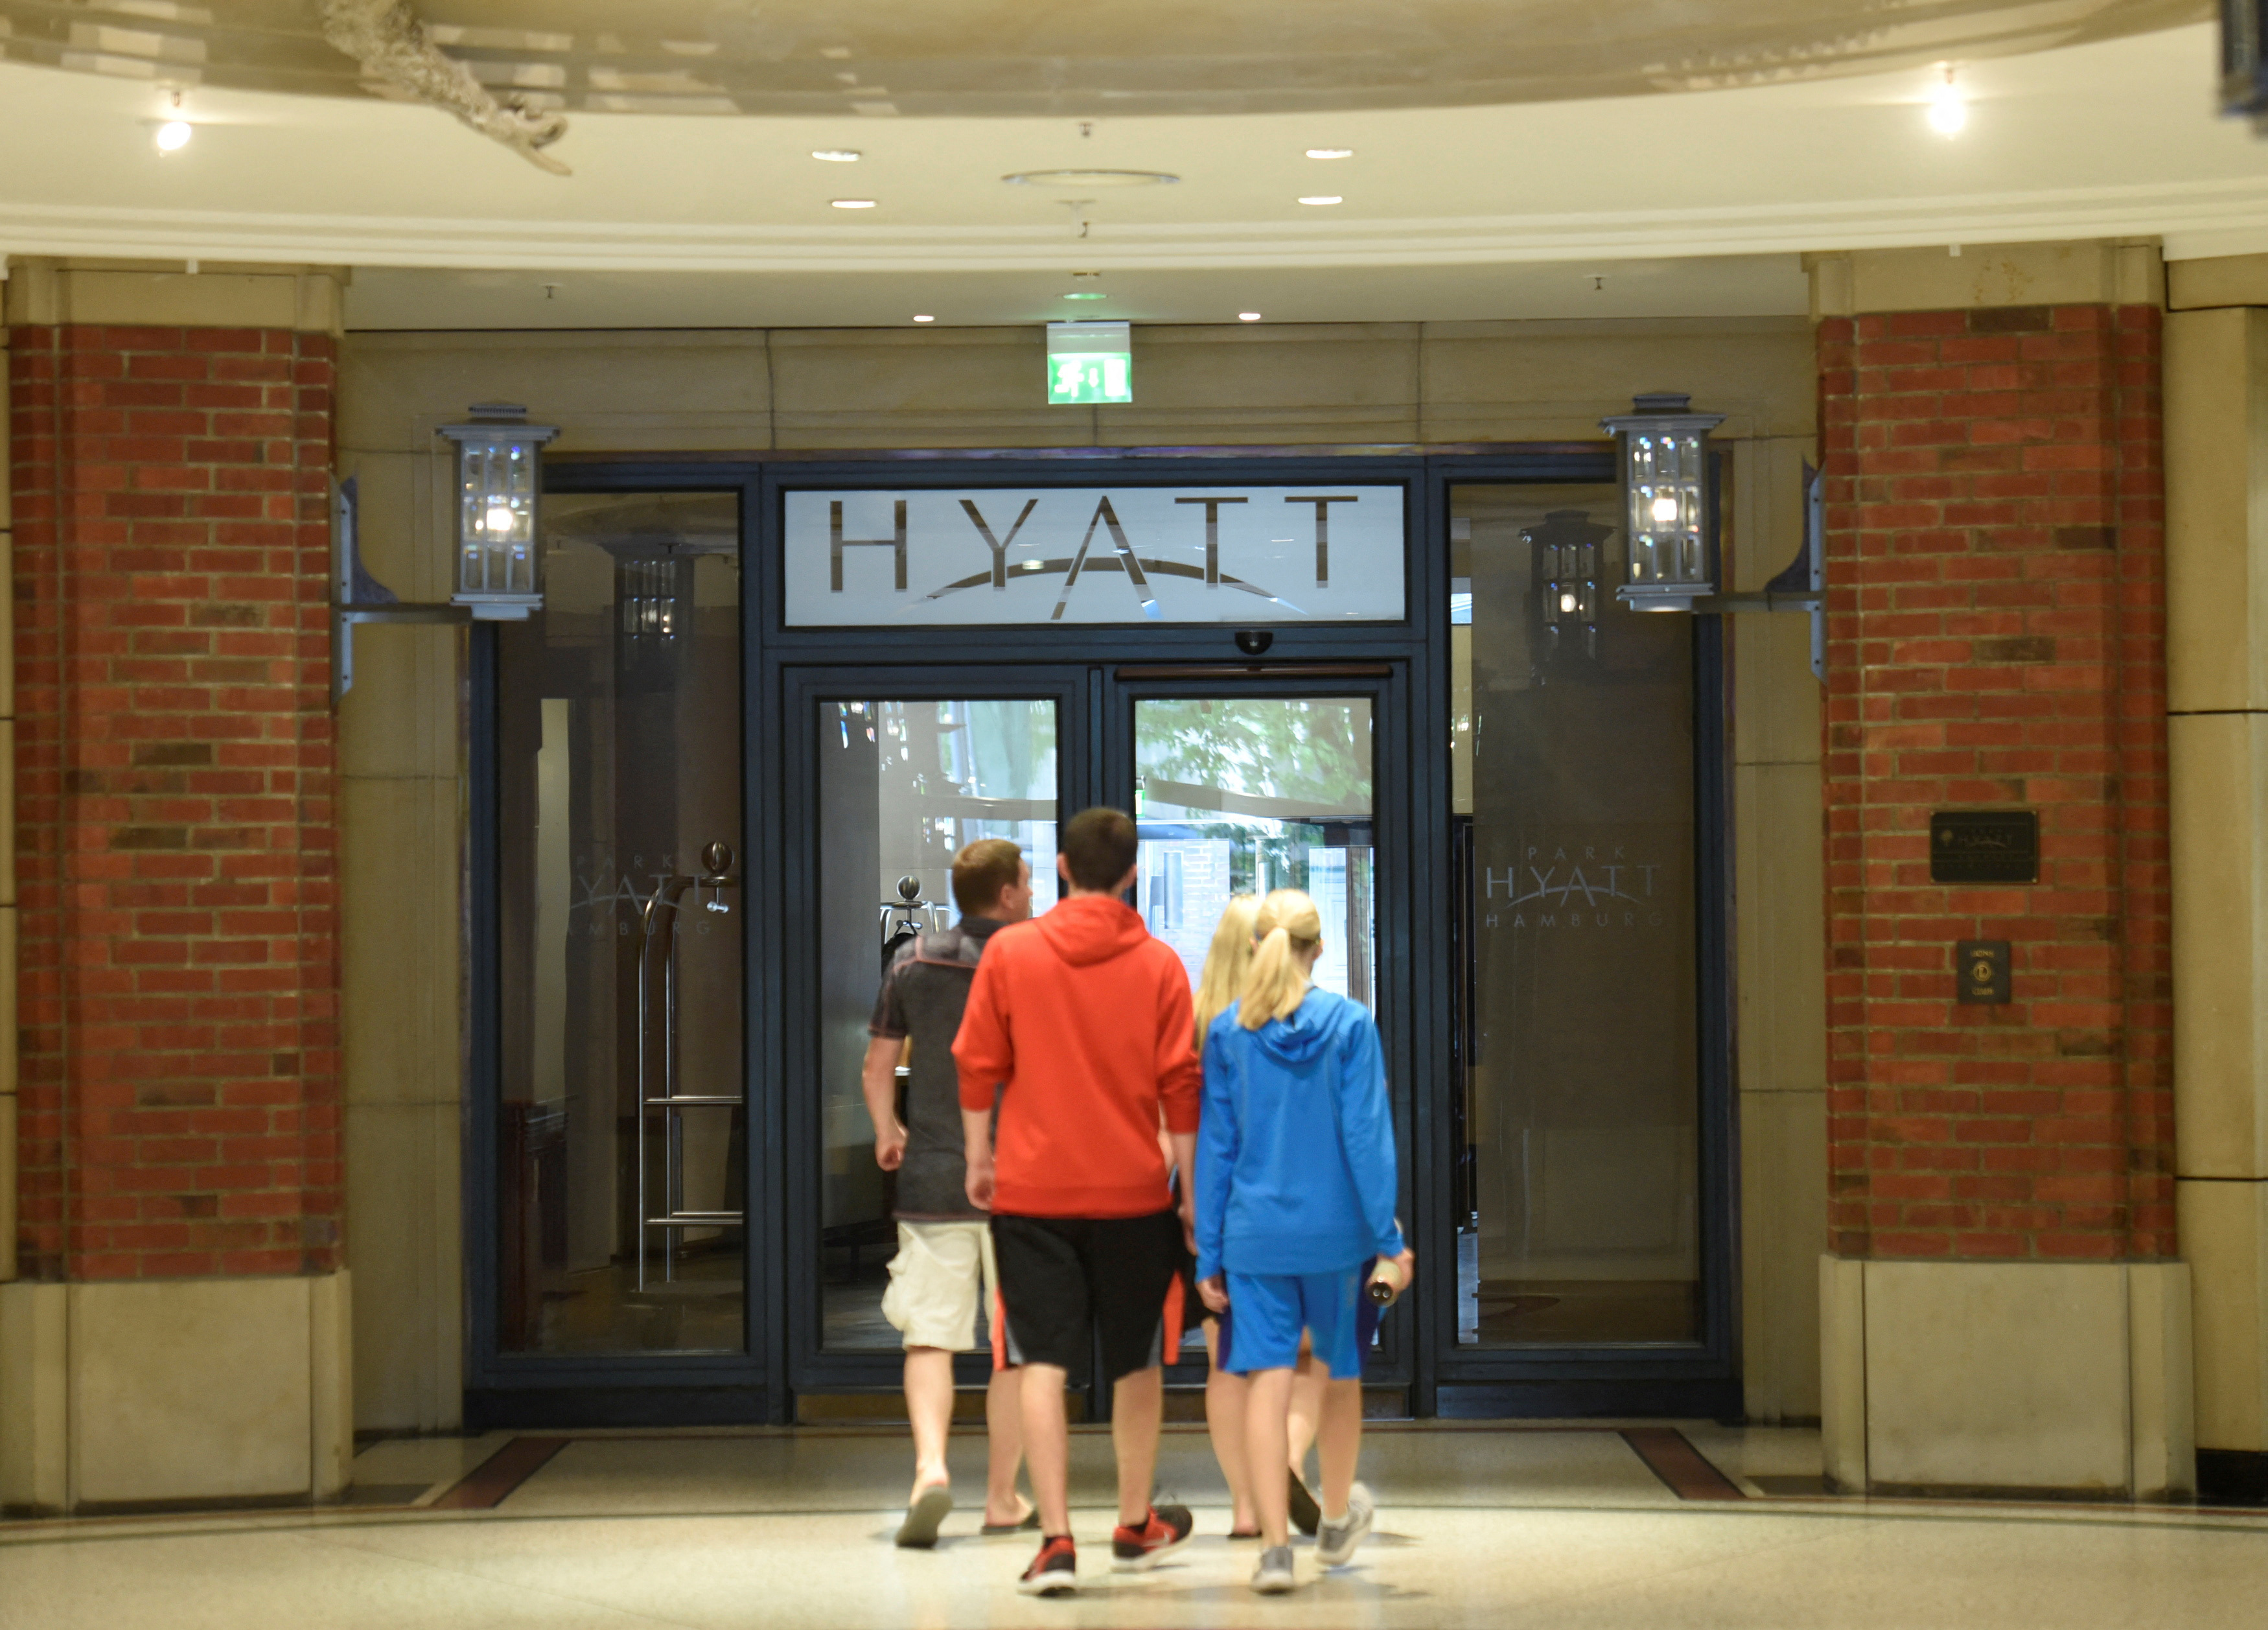 The hotel Hyatt is pictured in Hamburg